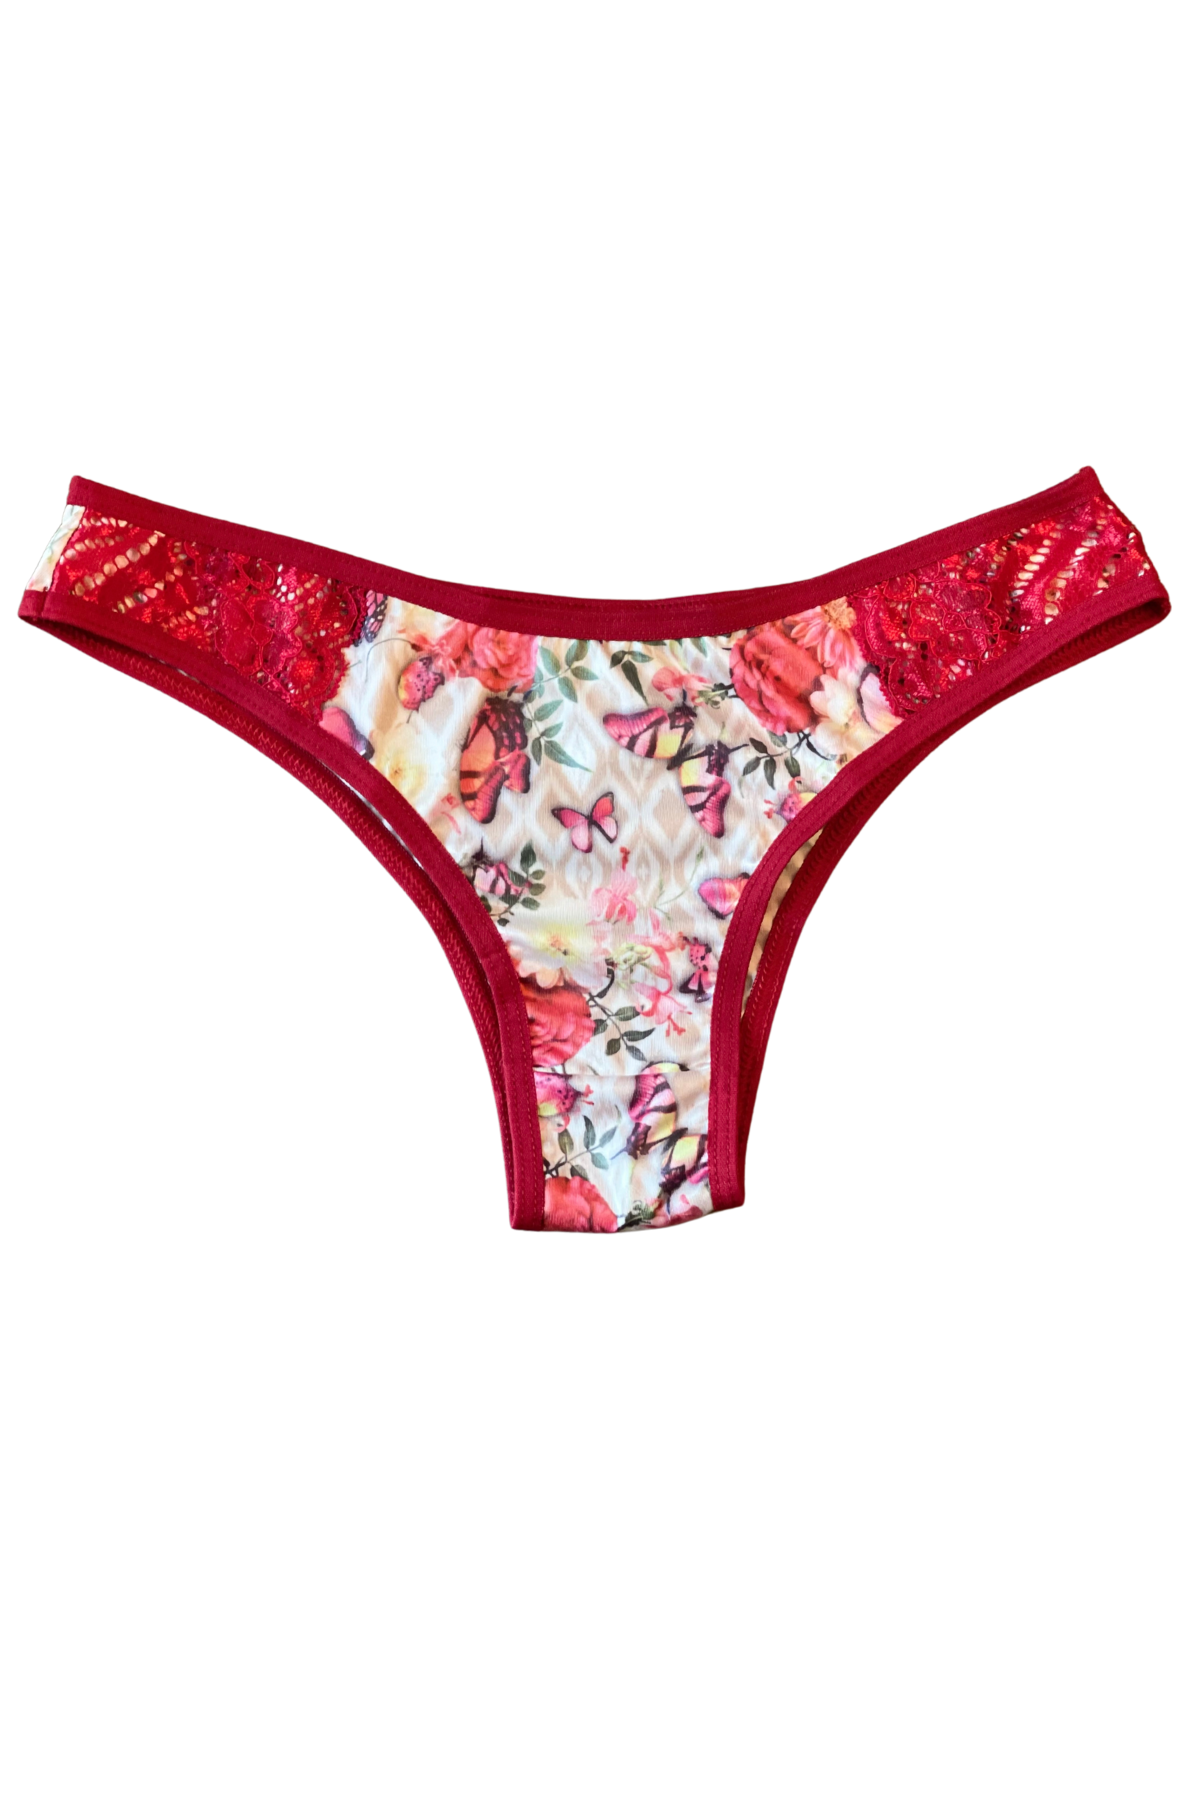 red lace butterfly print Brazilian panty underwear